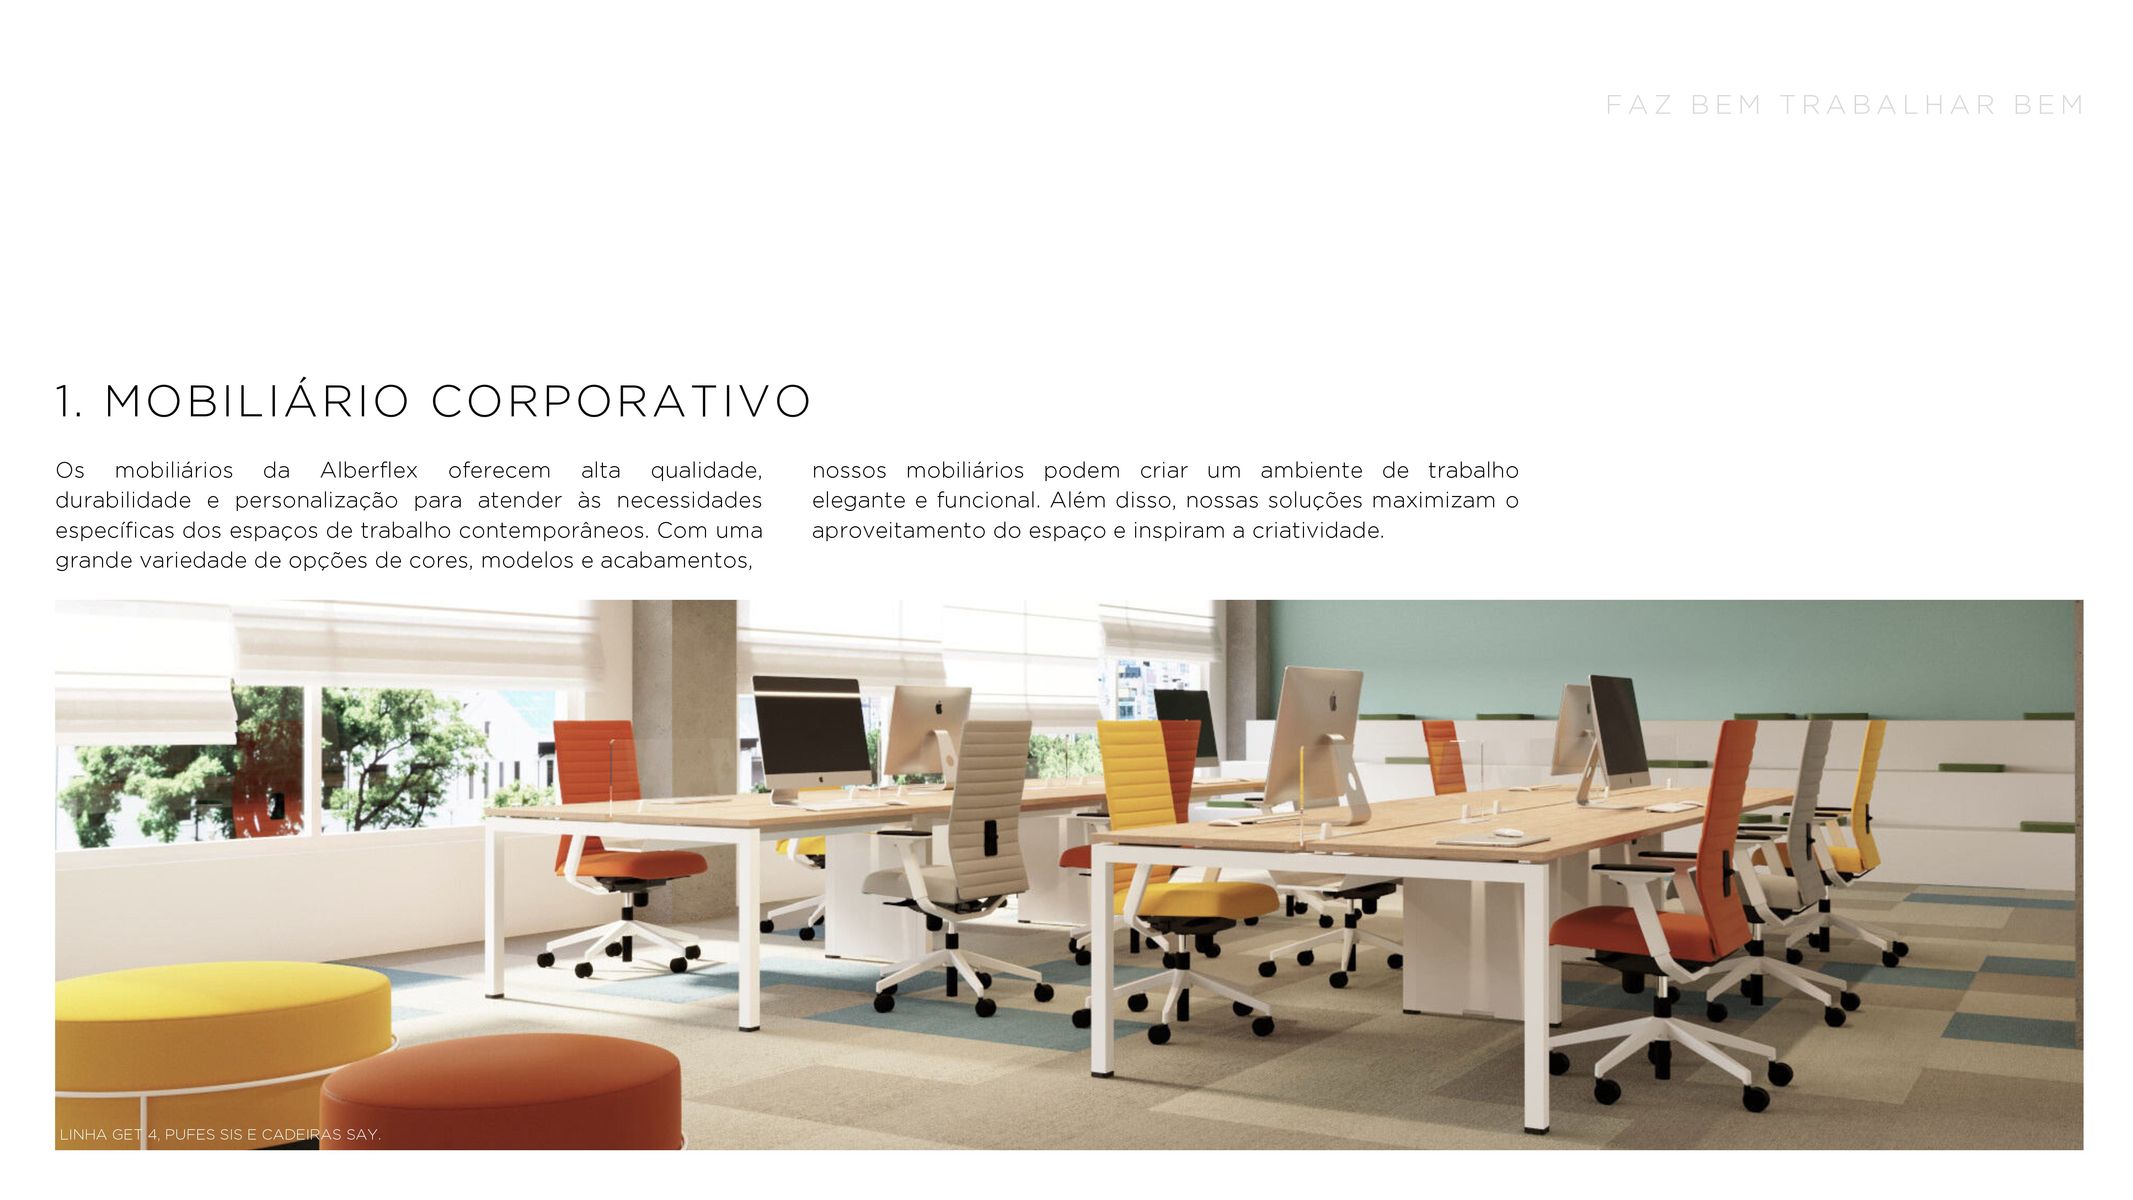 Mobiliário Corporativo - Linha GE UFES SIS e Cadeiras